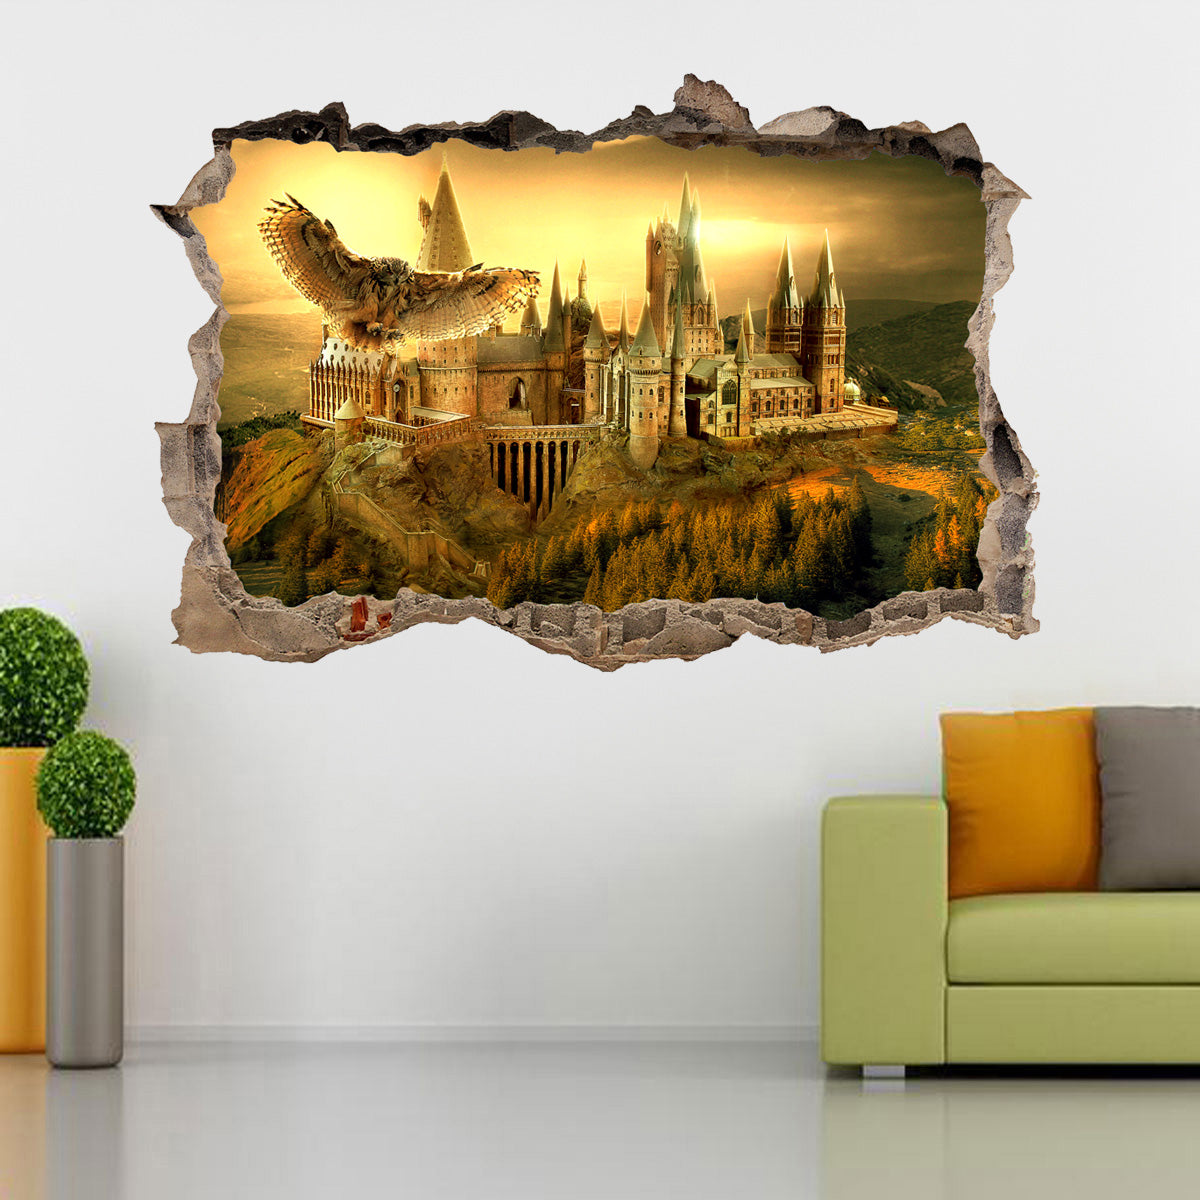 Harry Potter Hogwarts Castle 3D Smashed Broken Decal Wall Sticker H326 